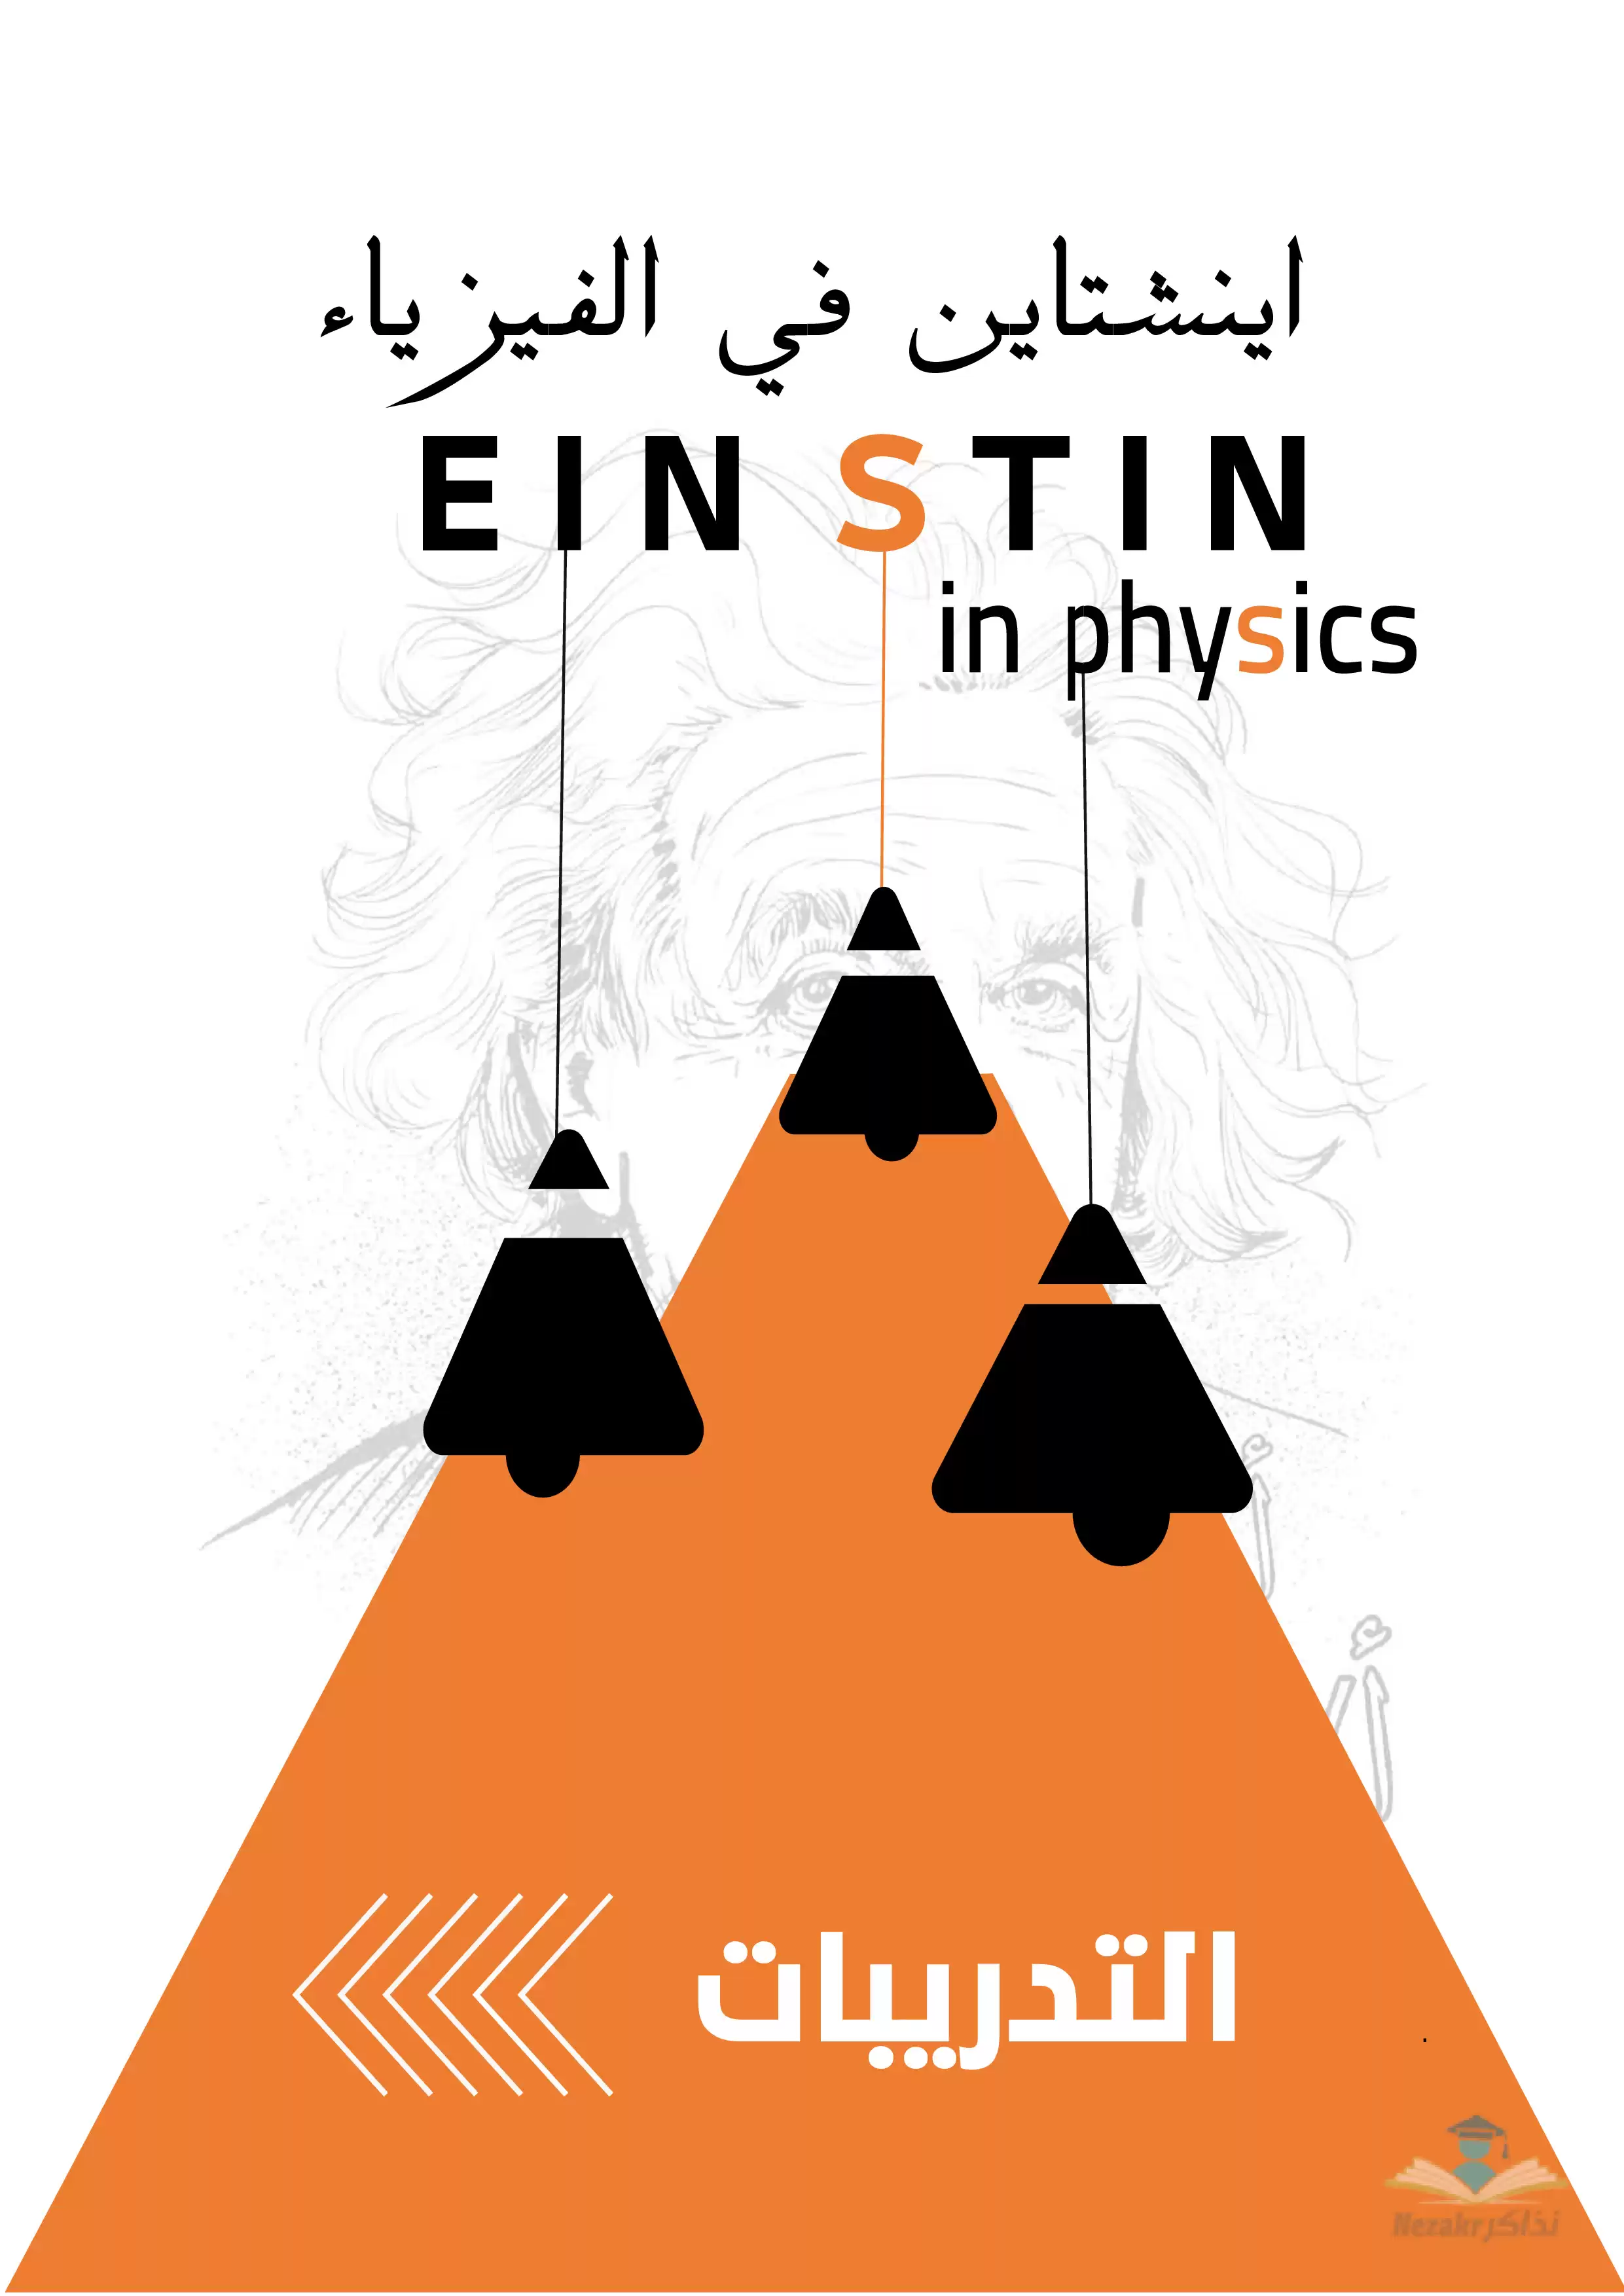 مذكرة أينشتاين في الفيزياء للصف الأول الثانوي الفصل الدراسي الثاني (جزء التدريبات)